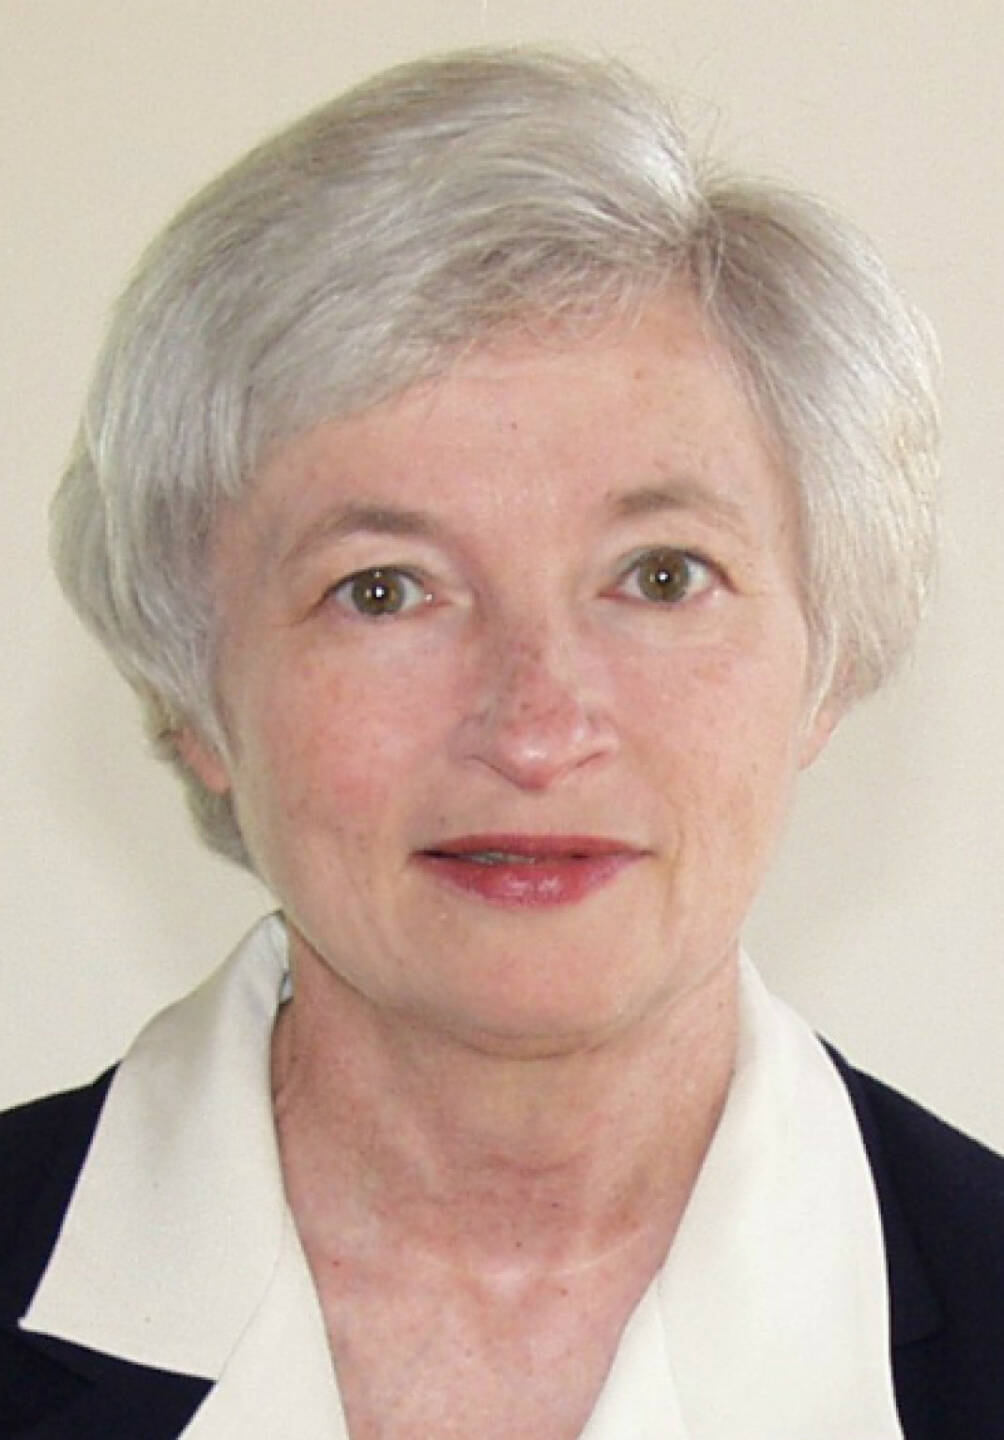 Janet Yellen: Präsident Obama hat sie für den Vorsitz der amerikanischen Zentralbank Fed nominiert (c) frbsf.org